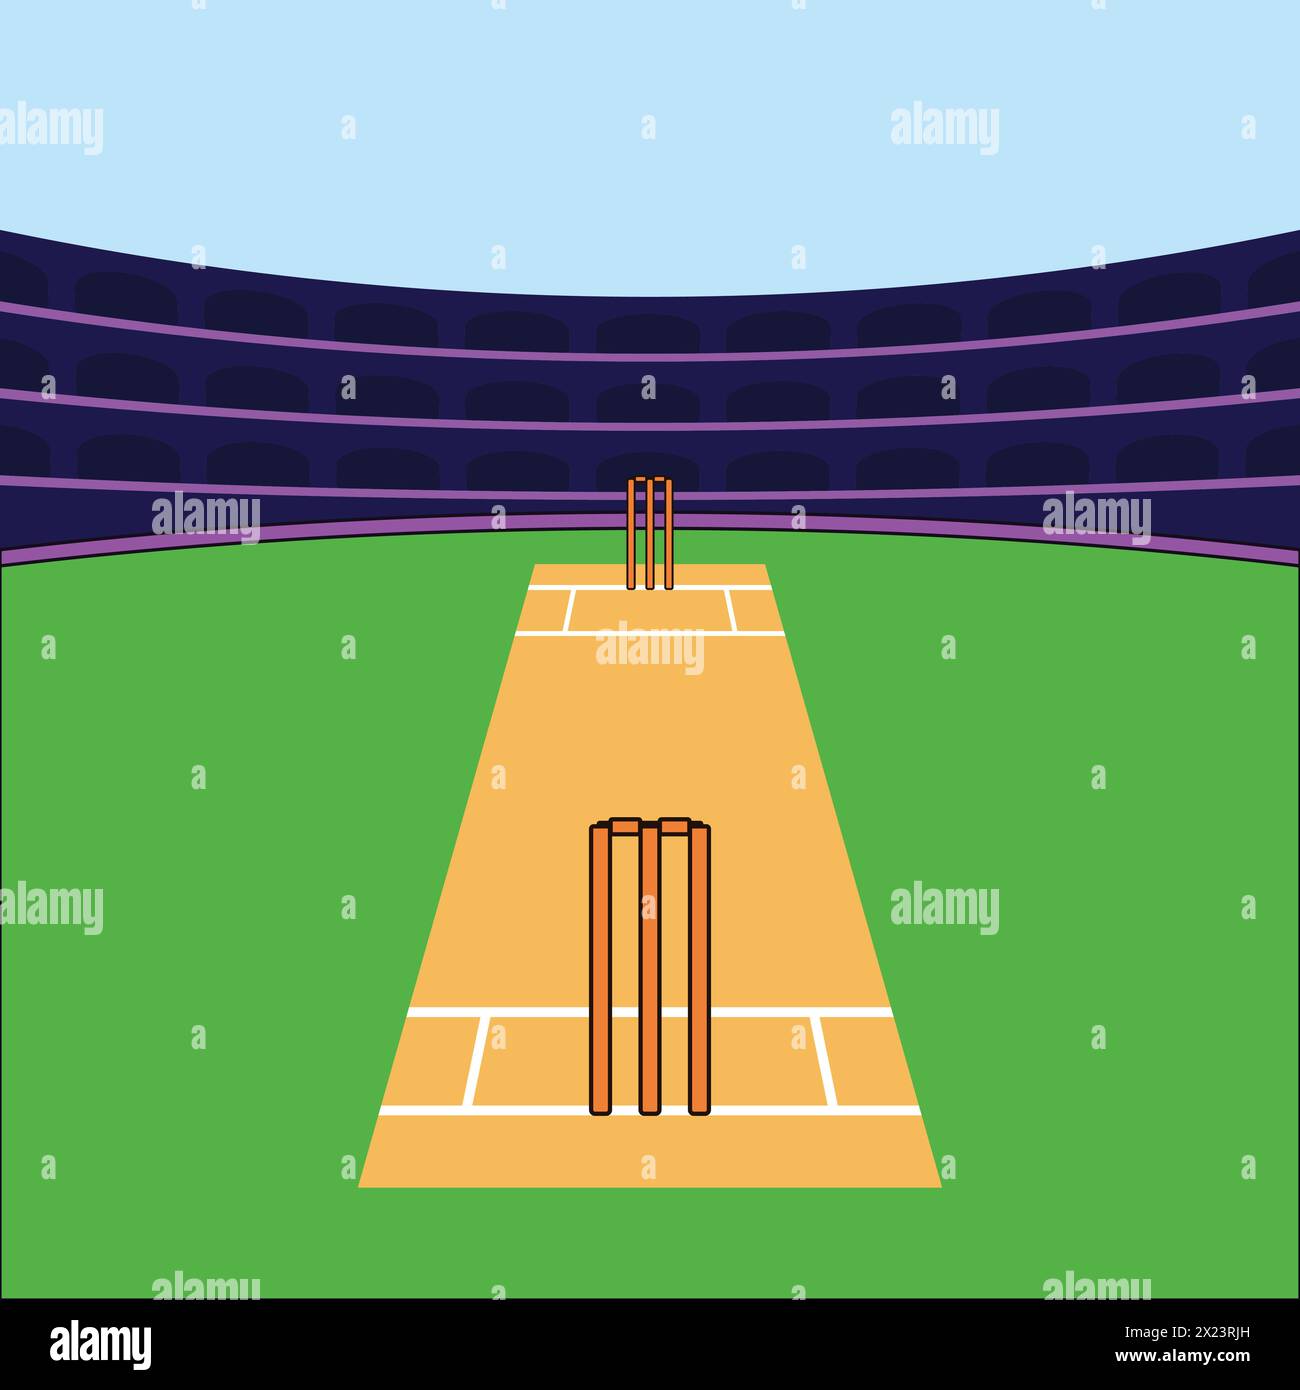 Cricket Pitch Icons vecteur d'illustration de stade de cricket Vector Cricket Sports Illustration de Vecteur